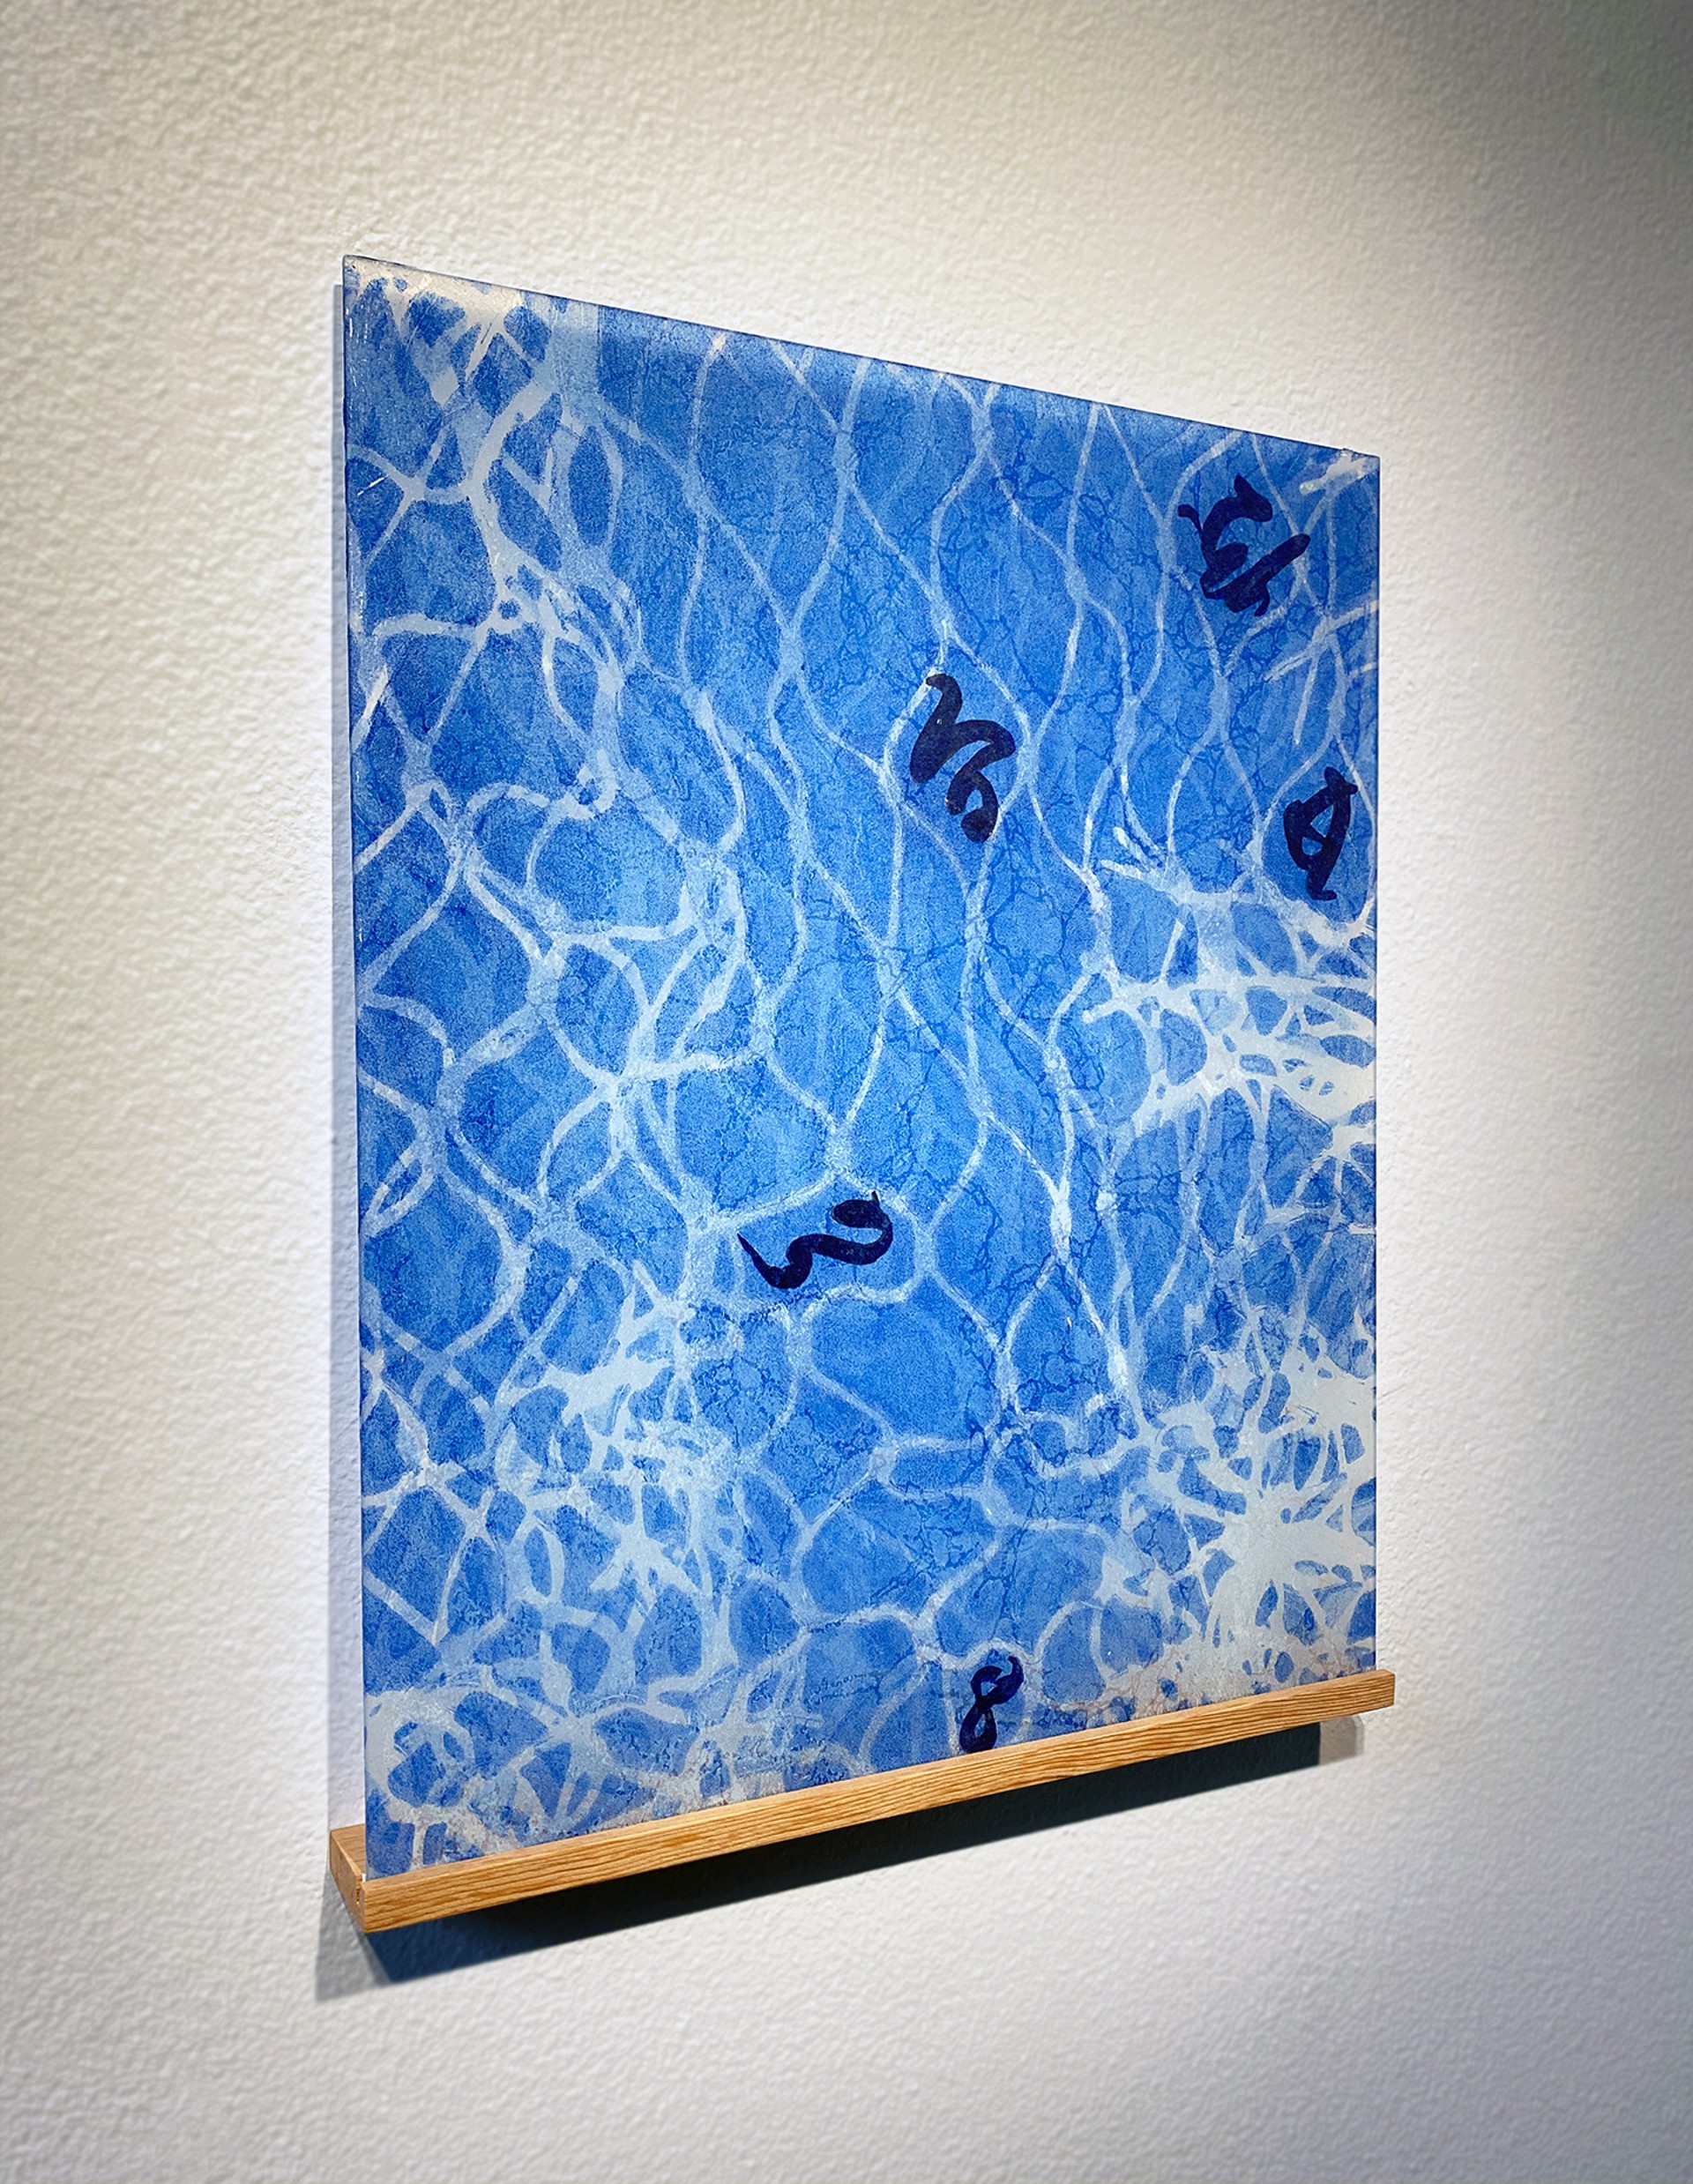 Waltz in Blue by Joan Wortis